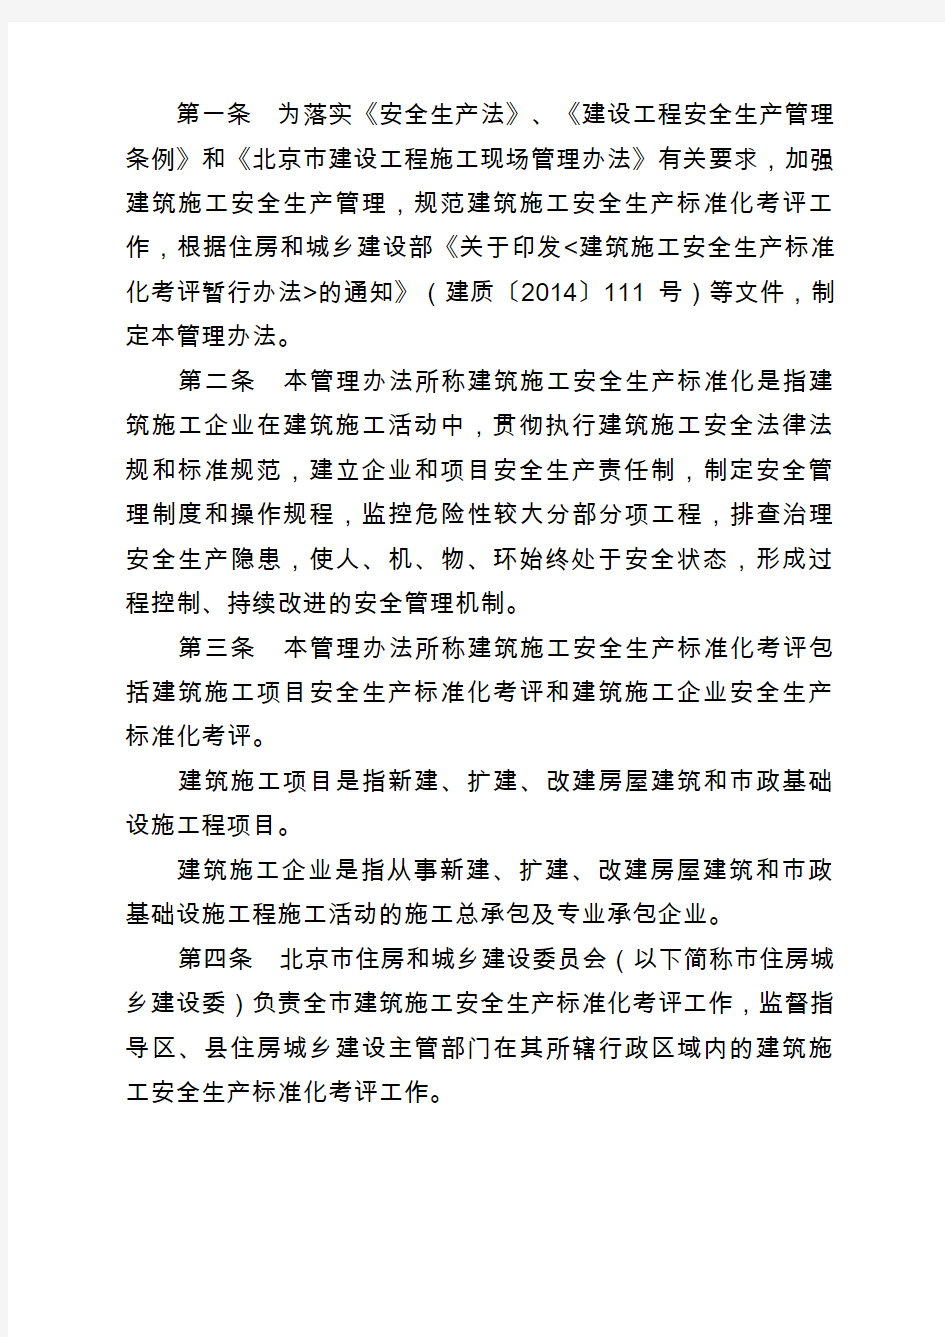 北京市建筑施工安全生产标准化考评管理办法试行京建法号